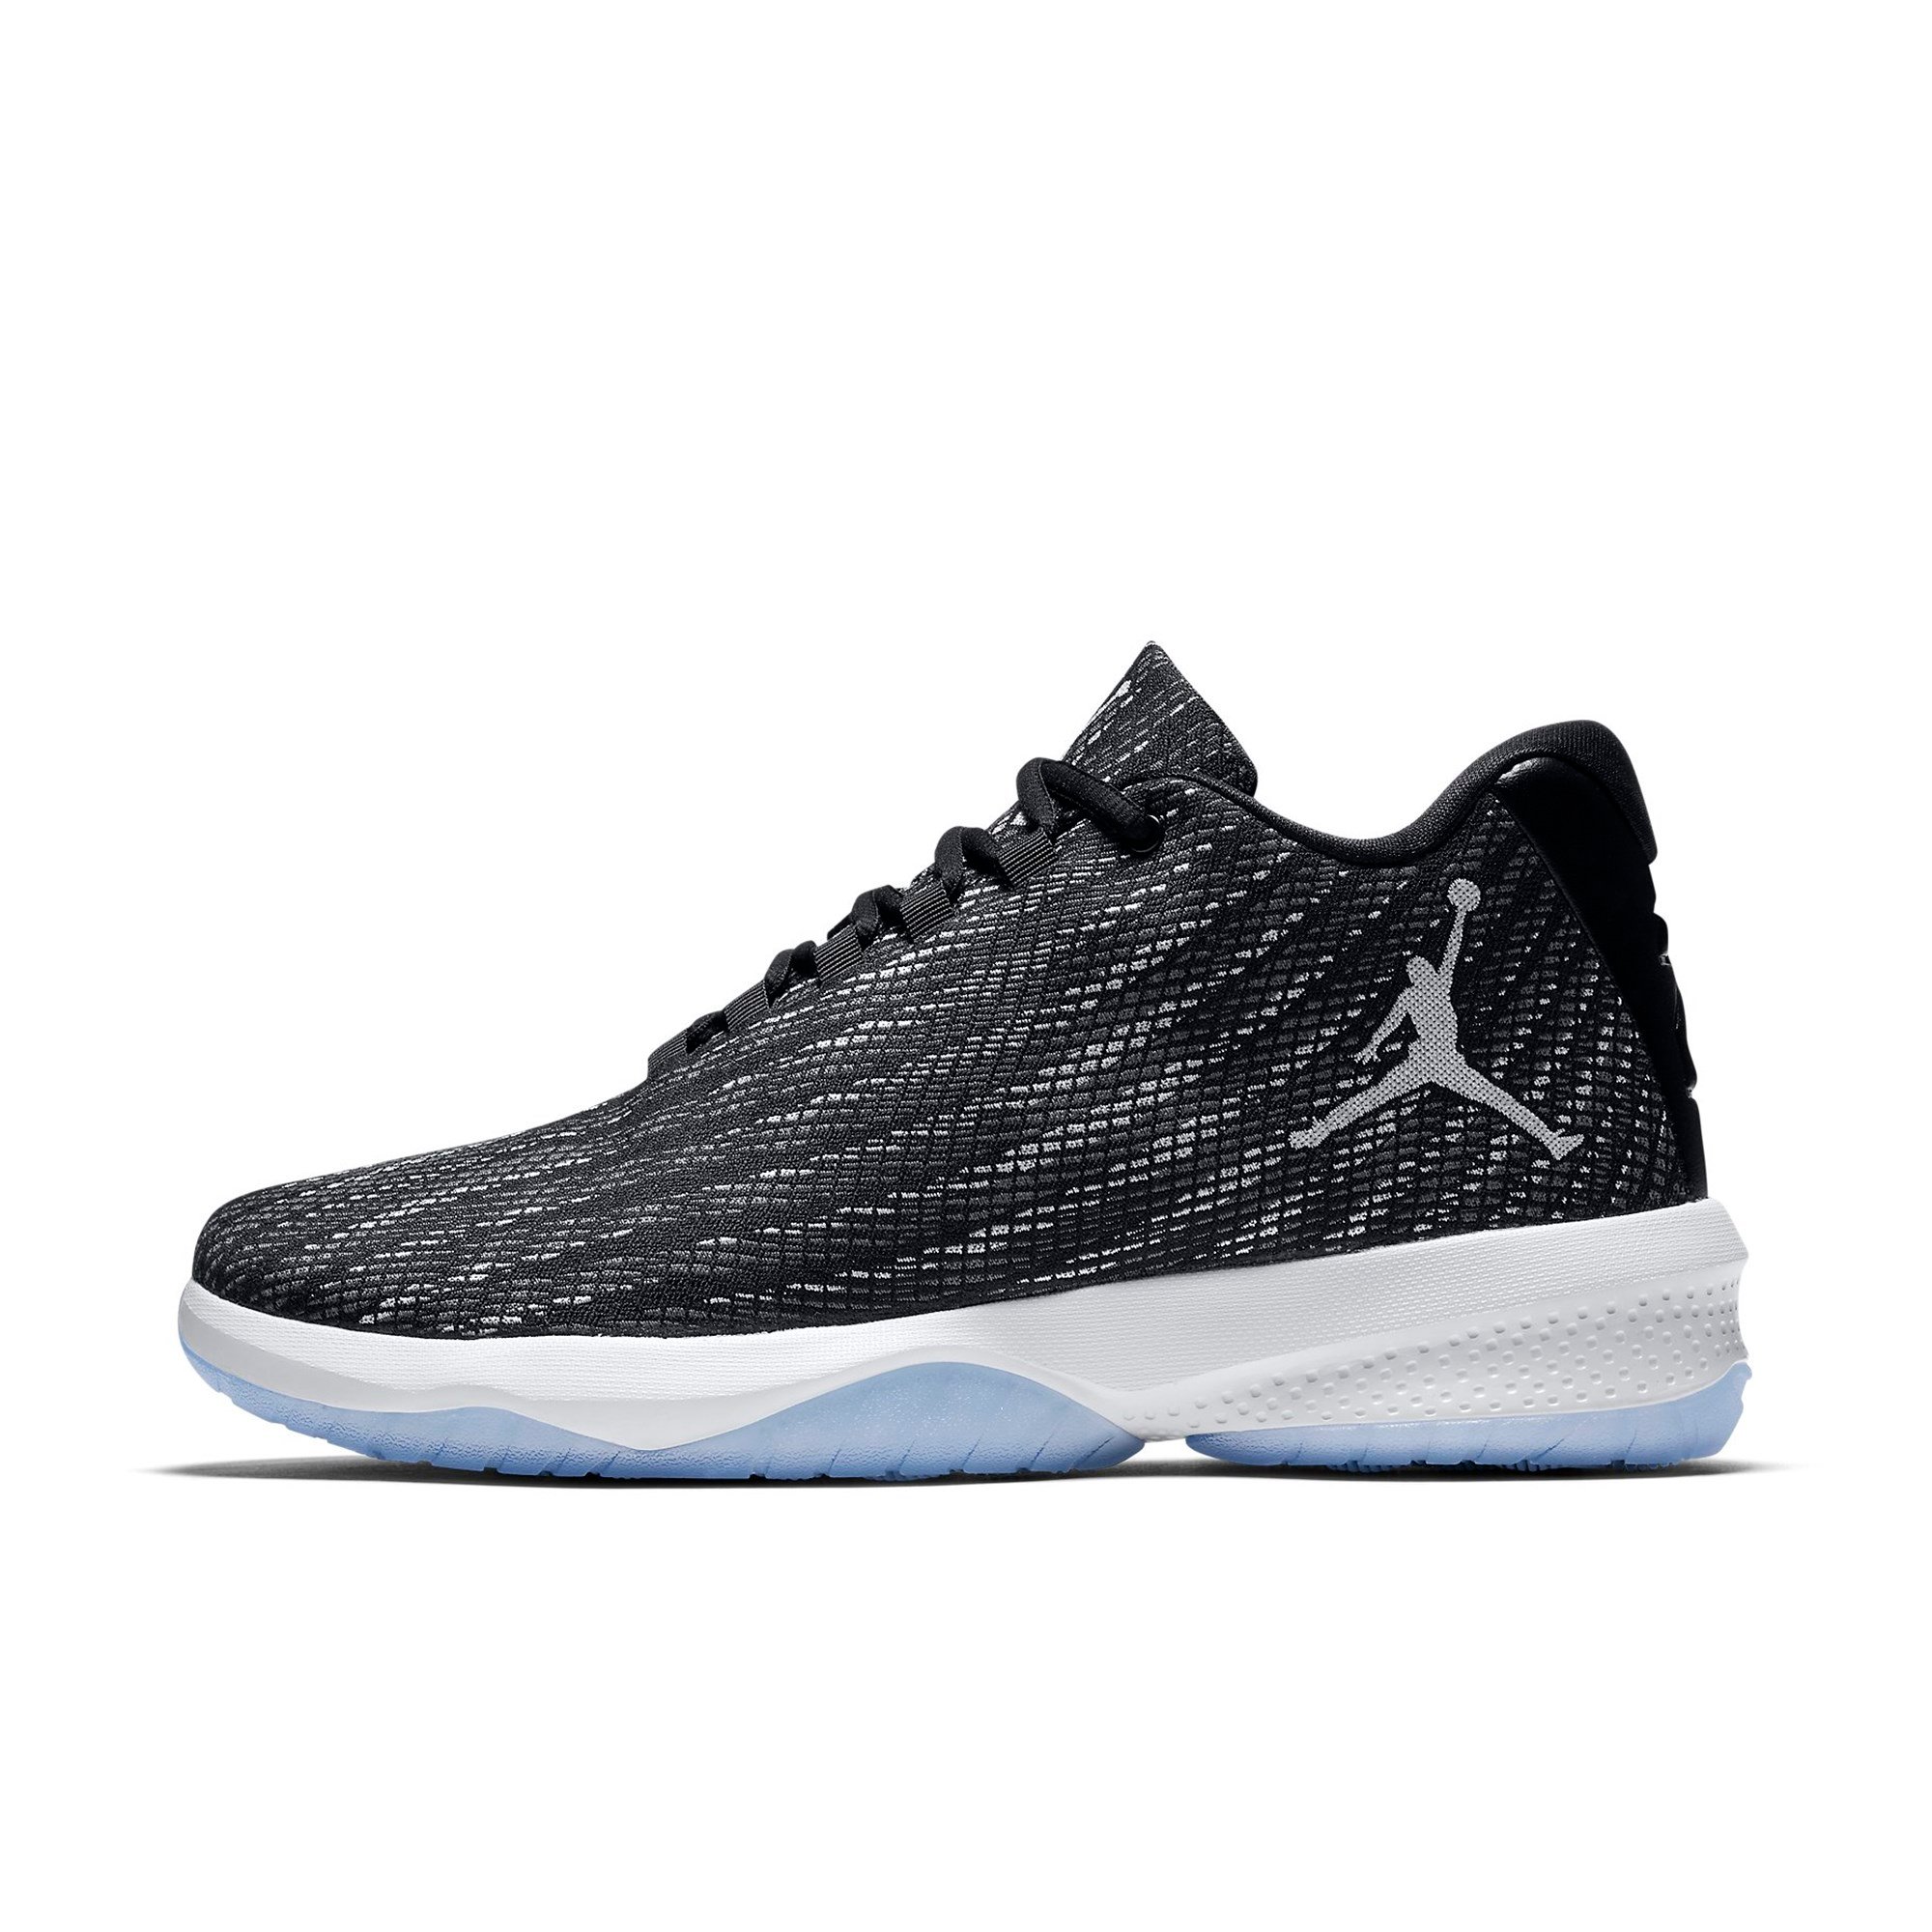 Nike Jordan B. Fly Erkek Spor Ayakkabı Ürün kodu: 881444-010 | Etichet Sport